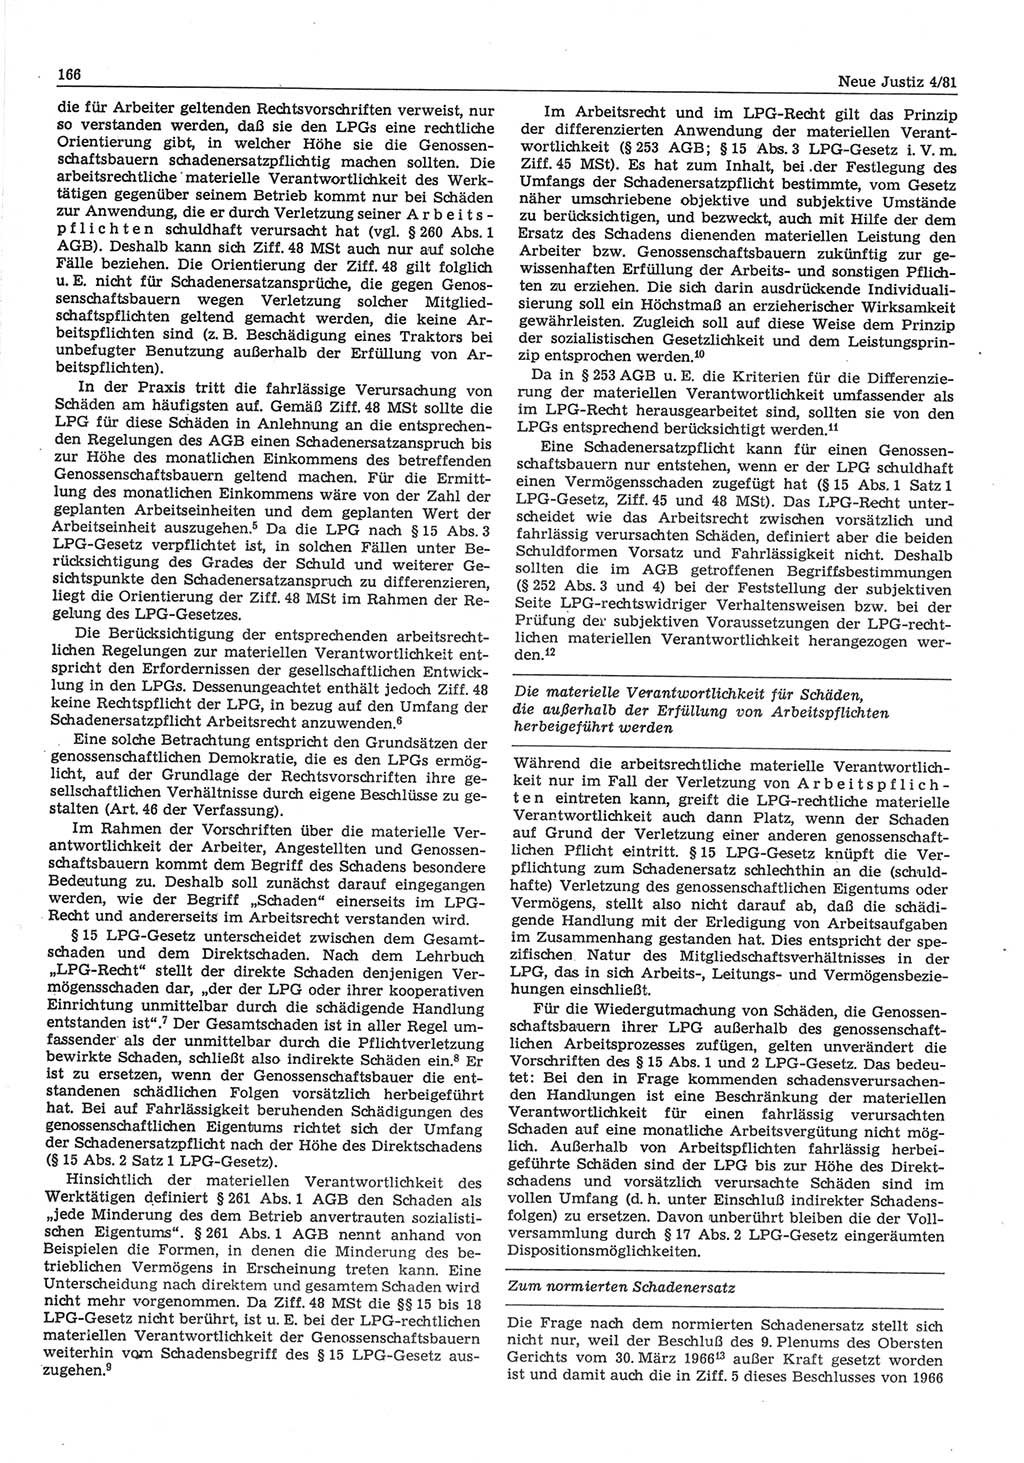 Neue Justiz (NJ), Zeitschrift für sozialistisches Recht und Gesetzlichkeit [Deutsche Demokratische Republik (DDR)], 35. Jahrgang 1981, Seite 166 (NJ DDR 1981, S. 166)